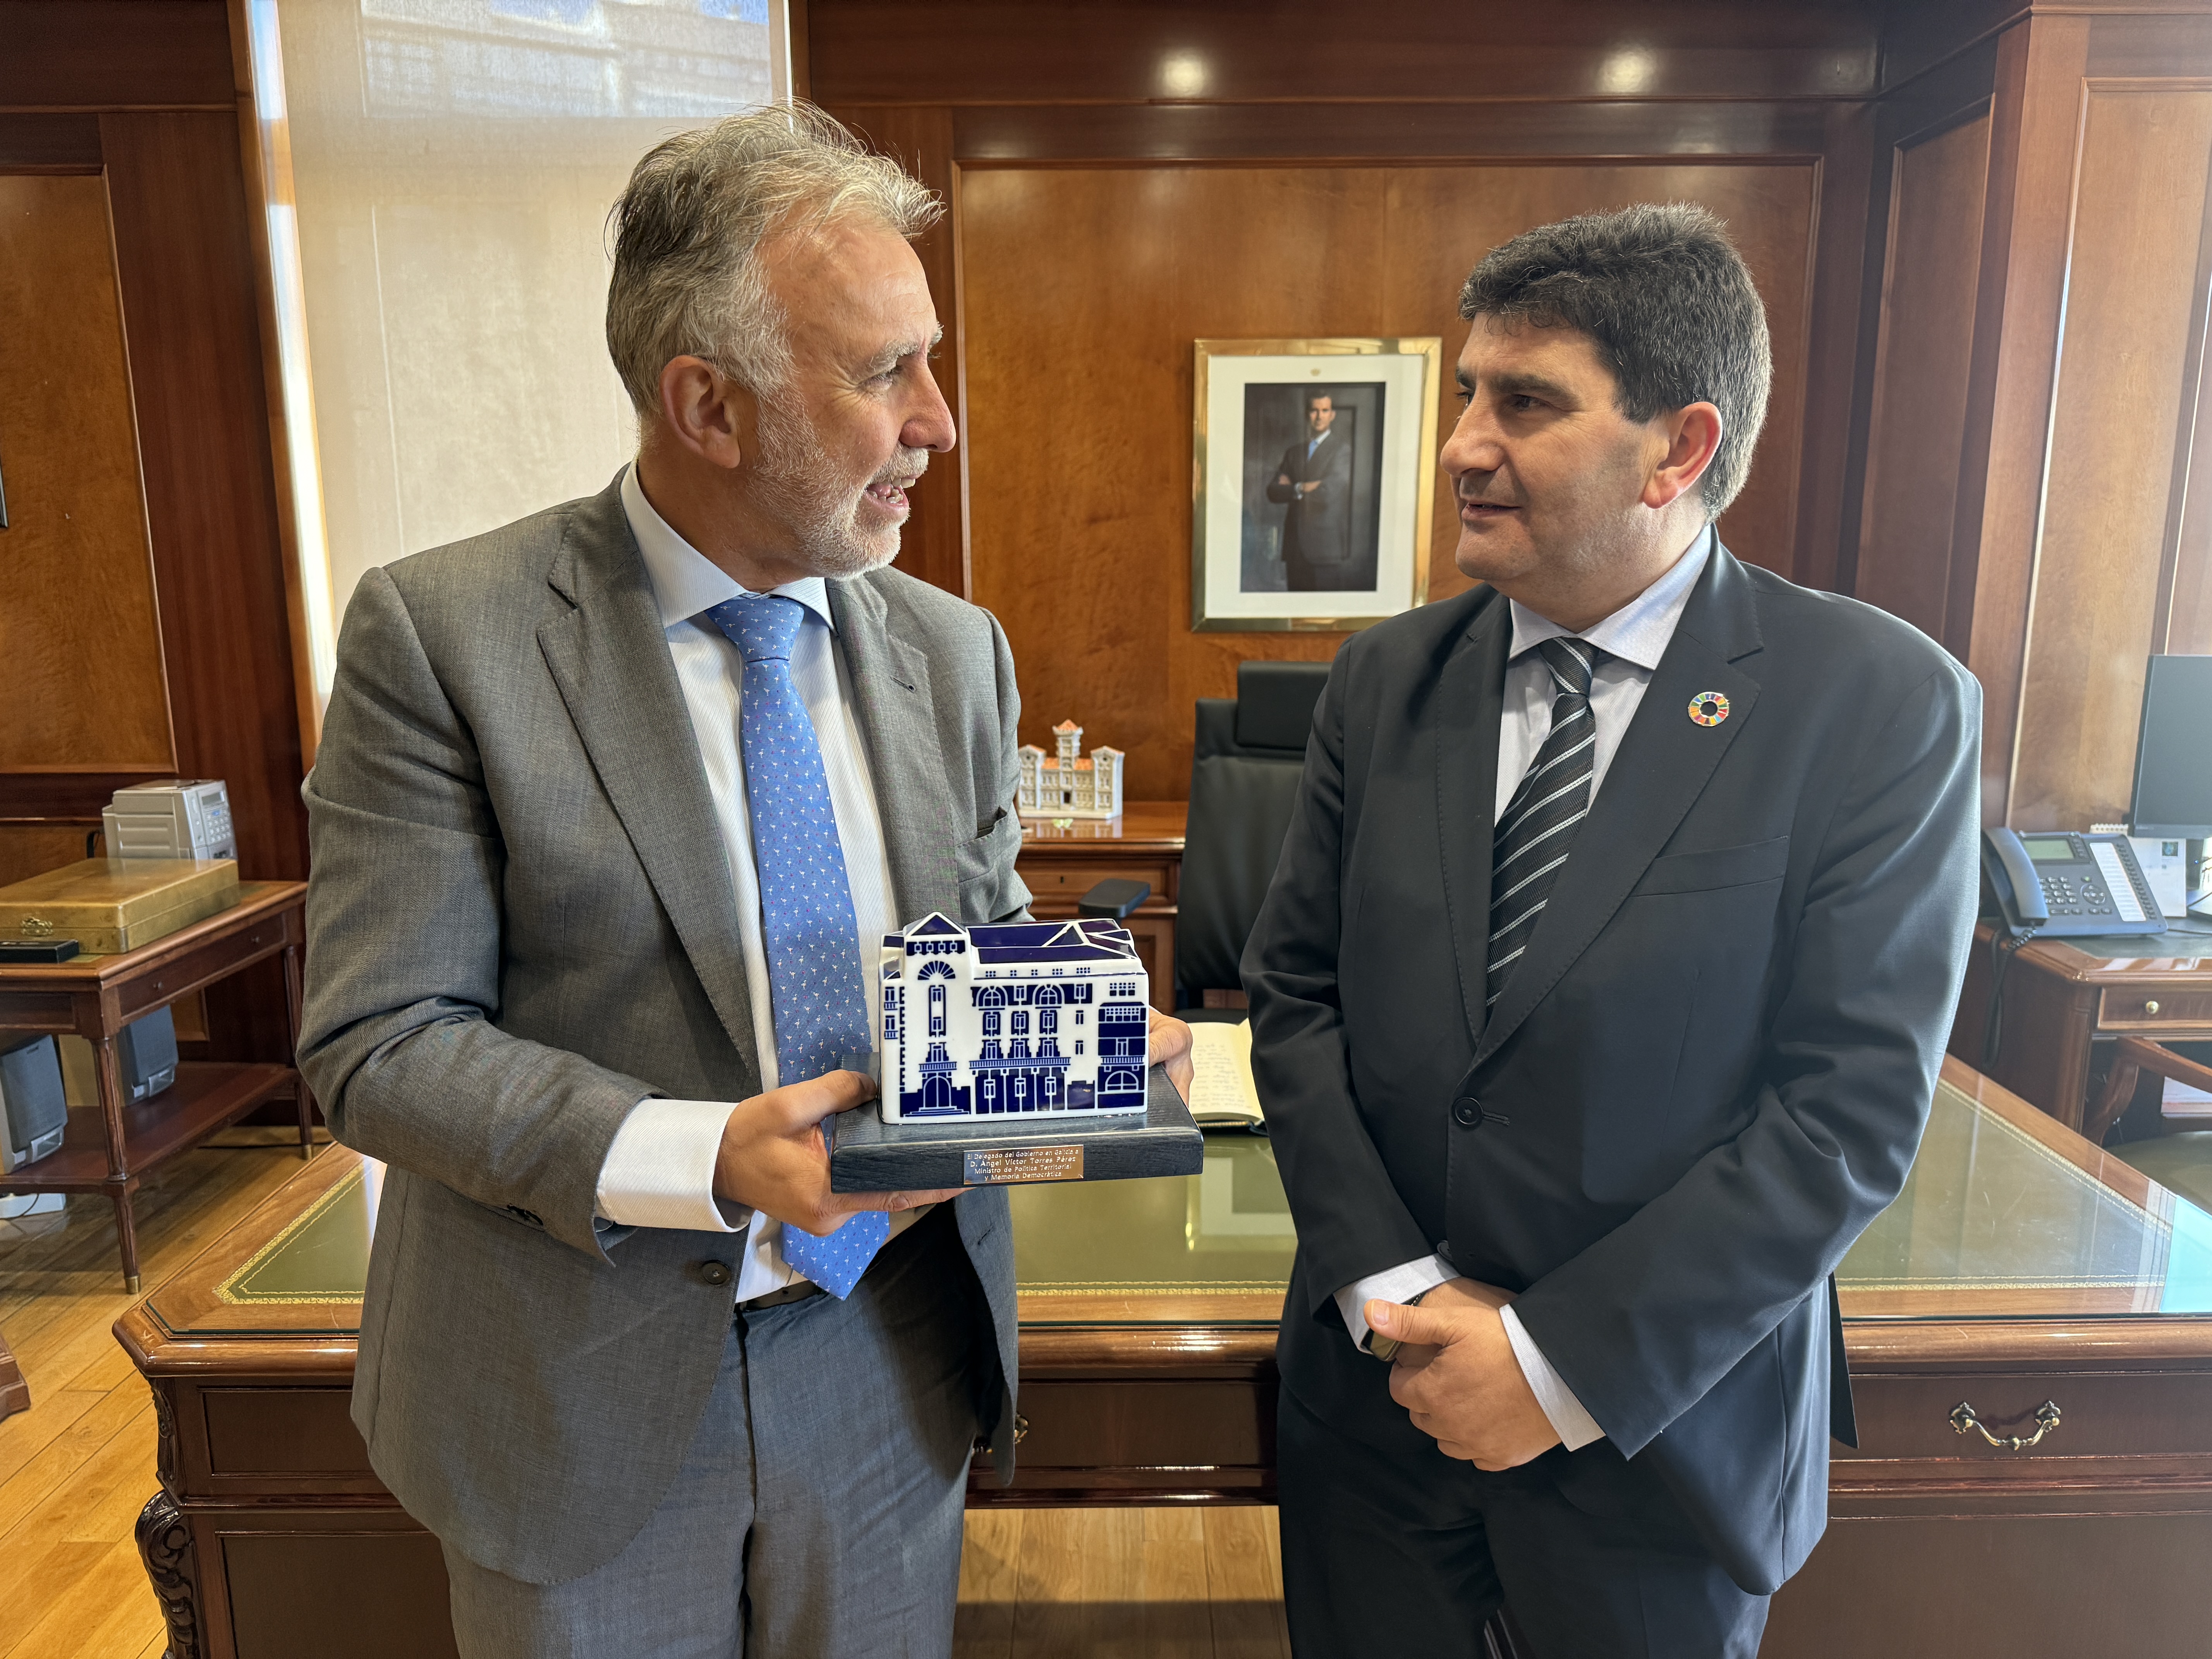 Reunión con el delegado del Gobierno de España en Galicia